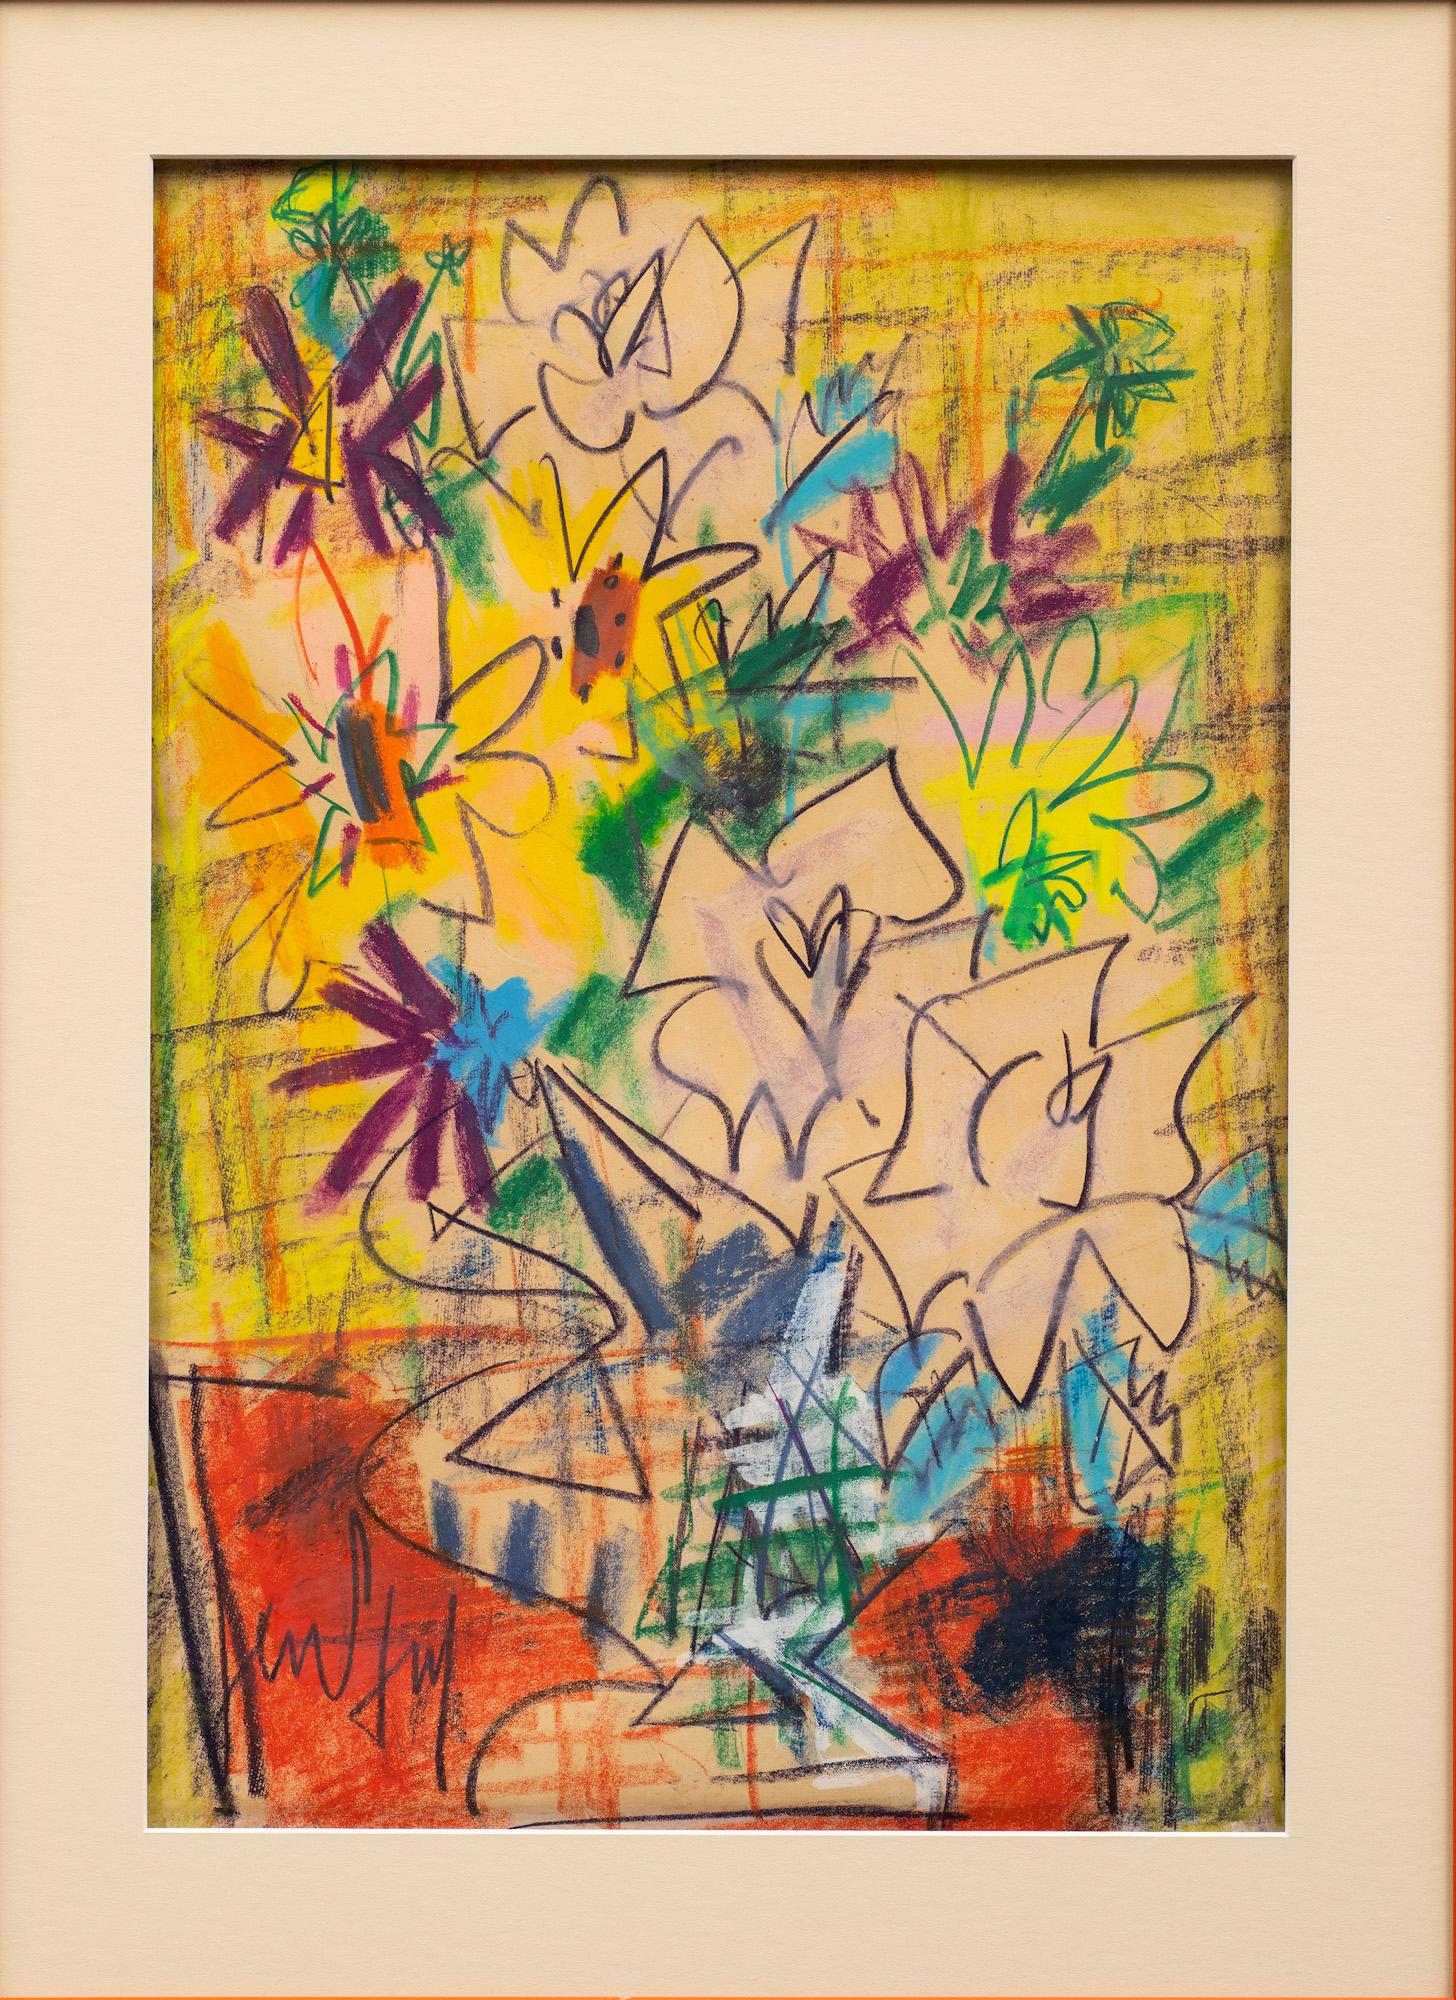 Französischer Expressionismus „Eine Blumenvase“ Gen Paul (französisch, 1895-1975) – Painting von GEN PAUL